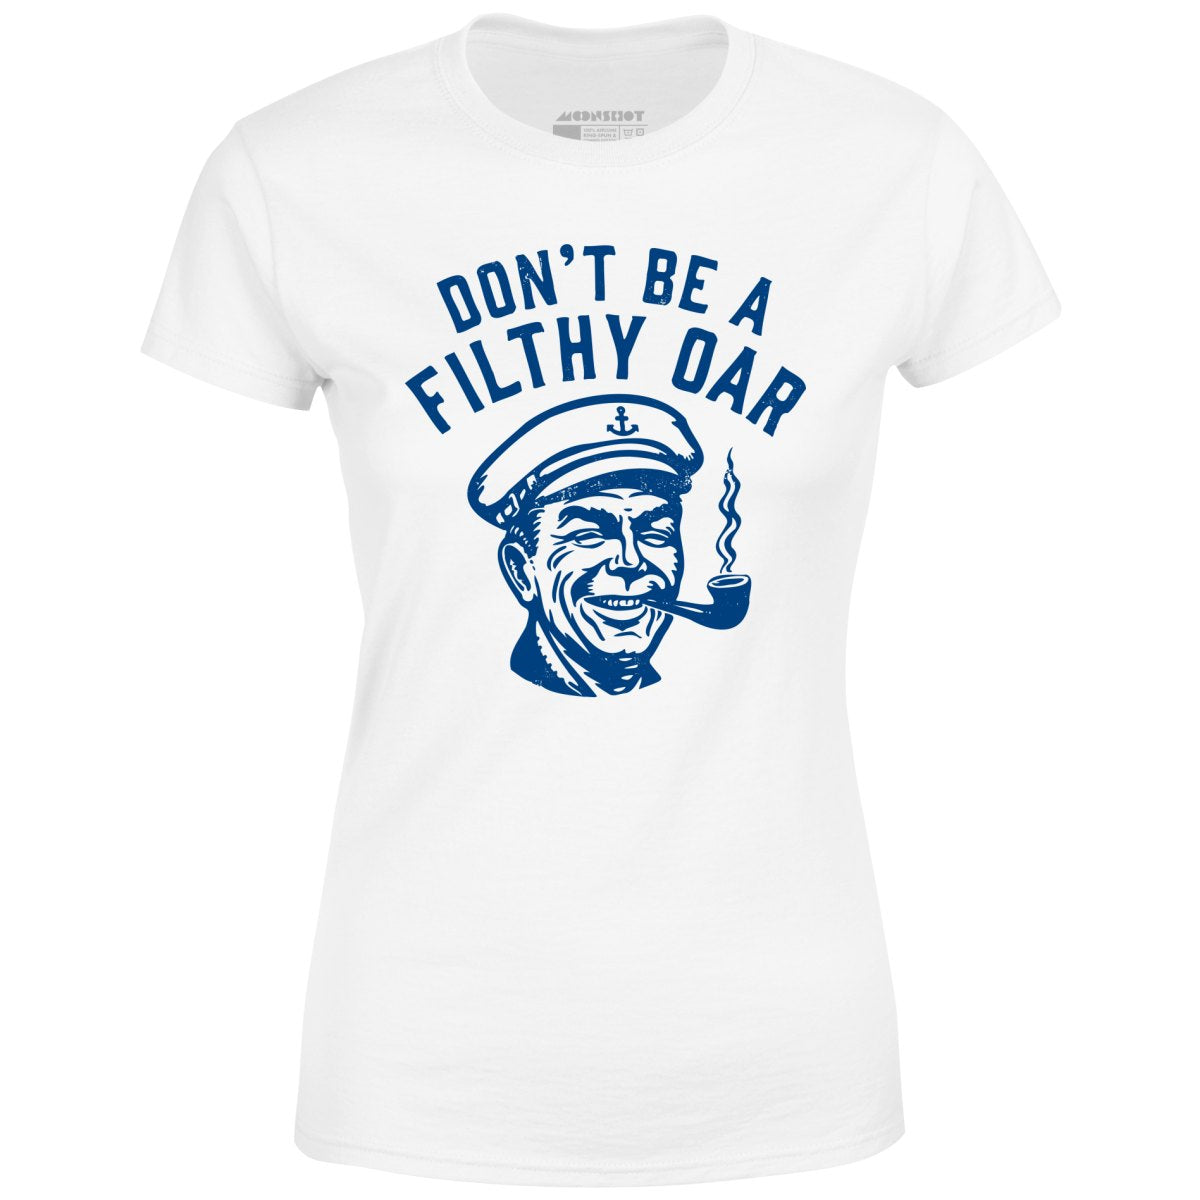 Don't Be a Filthy Oar - Women's T-Shirt